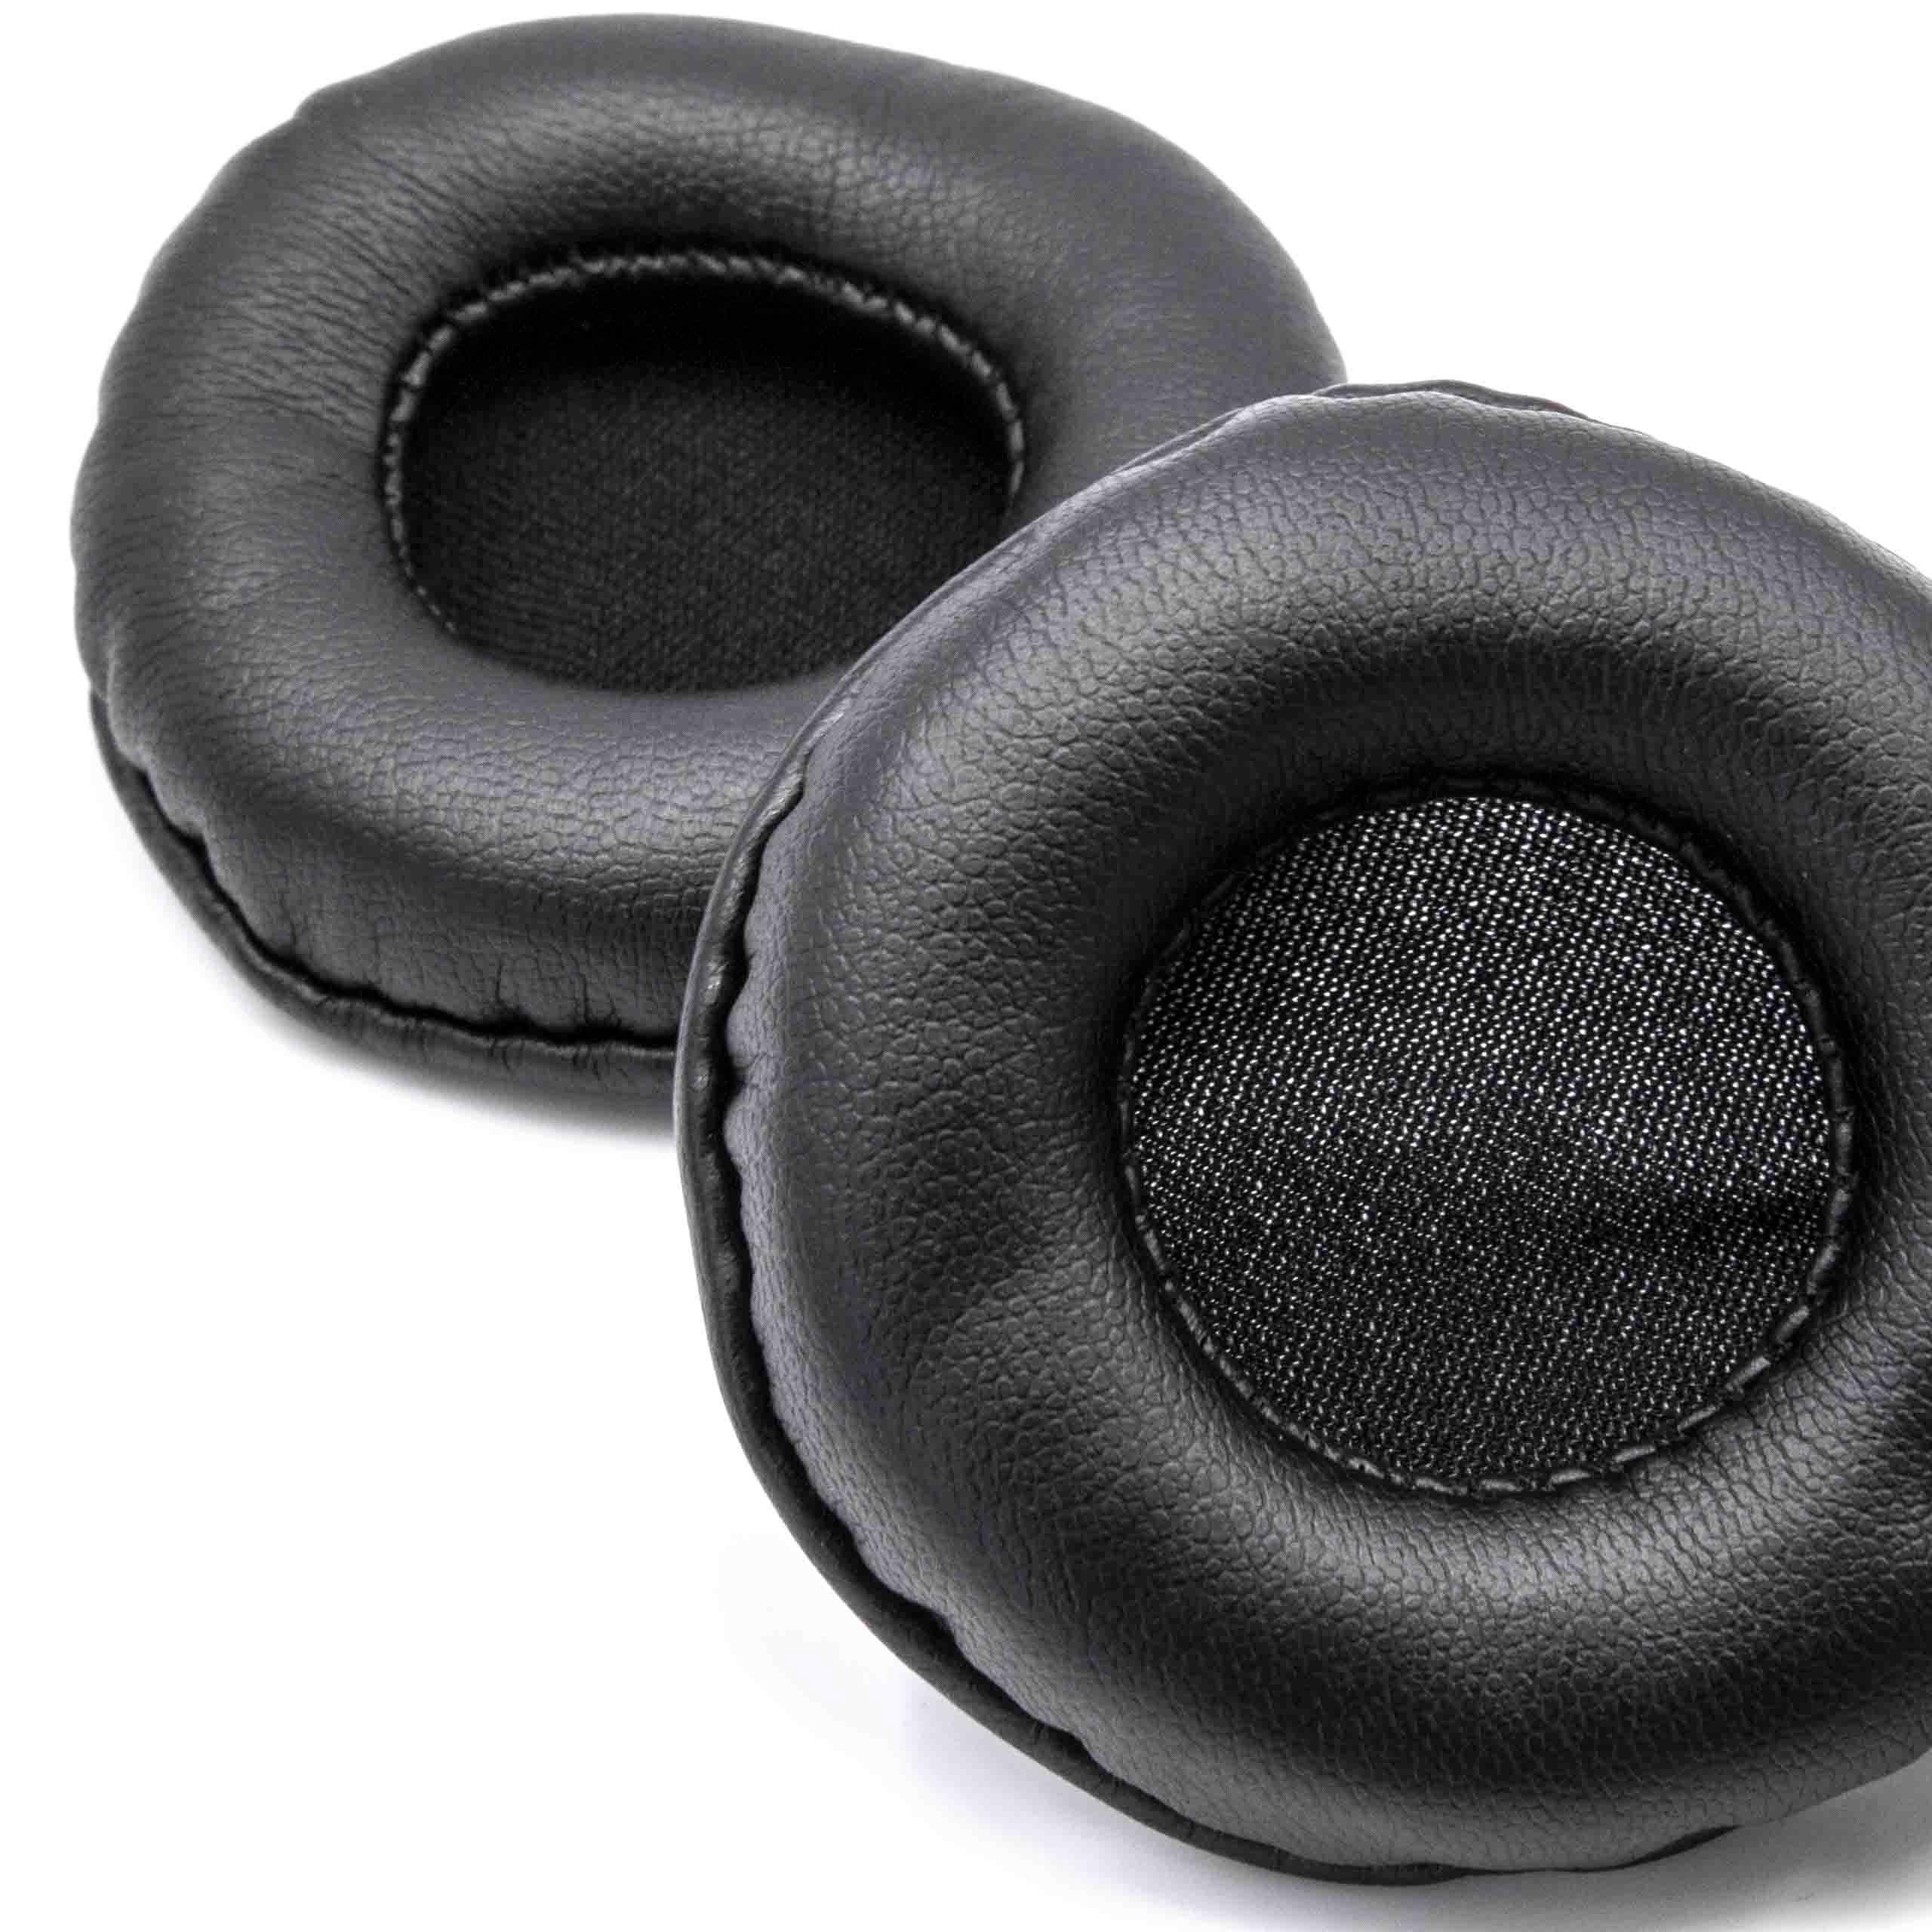 vhbw passend für Kopfhörer, die benötigen Ohrpolster Kopfhörer Ohrpolster 60mm